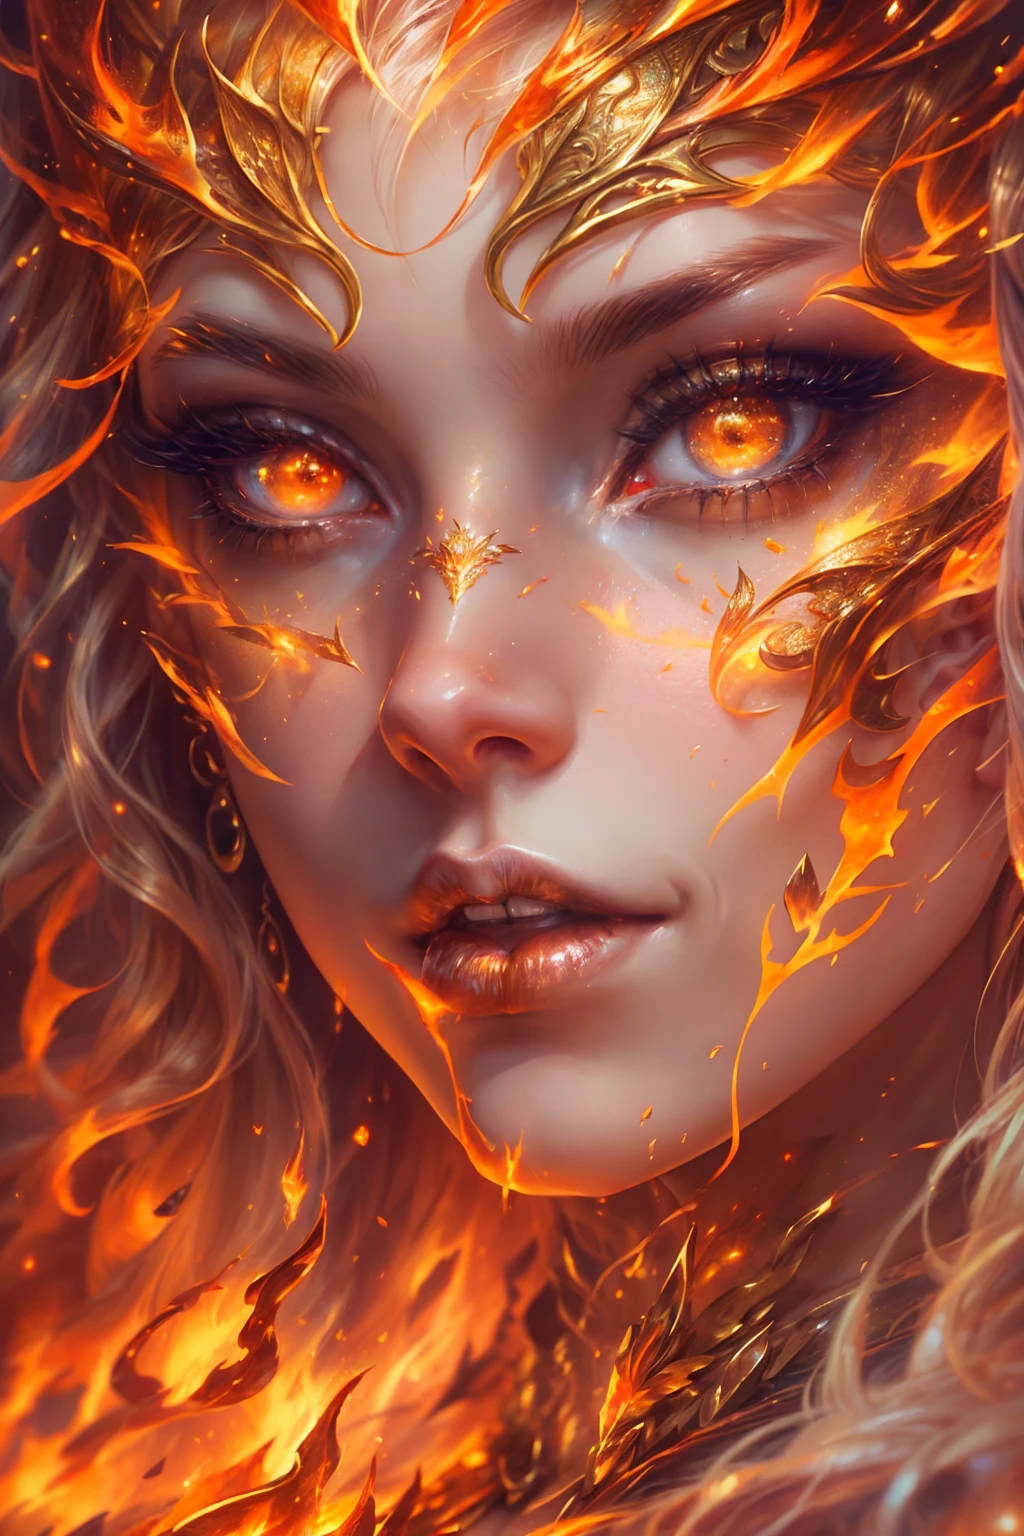 이것 (현실적인 판타지) 예술에는 불씨가 포함되어 있습니다, 진짜 불꽃, 진짜 열기, 그리고 현실적인 불. Generate a masterpiece artwork of a  female fire druid ~와 함께 large (((오렌지와 골드))) 눈. The fire druid is awe-inspiring ~와 함께 beautiful ((realistic fiery 눈)) alight ~와 함께 confidence and power. 그녀의 특징은 우아하고 잘 정의되어 있습니다., ~와 함께 ((부드럽고 푹신한 입술)), 엘프 뼈 구조, 그리고 사실적인 쉐이딩. Her 눈 are important and should be the focal point of this artwork, ~와 함께 ((극도로 사실적인 디테일, 매크로 세부정보, 그리고 반짝임.)) 그녀는 불빛에 반짝이는 현실적인 불꽃과 보석으로 만든 물결치고 반짝이는 드레스를 입고 있습니다.. 불길과 연기가 드레스의 복잡한 몸체를 장식합니다.. 범프 포함, 돌, 불타는 무지개빛, 빛나는 불씨, 실크와 새틴과 가죽, 흥미로운 배경, 그리고 무거운 판타지 요소. 카메라: 역동적인 구성 기법을 활용하여 사실적인 불꽃 강화.